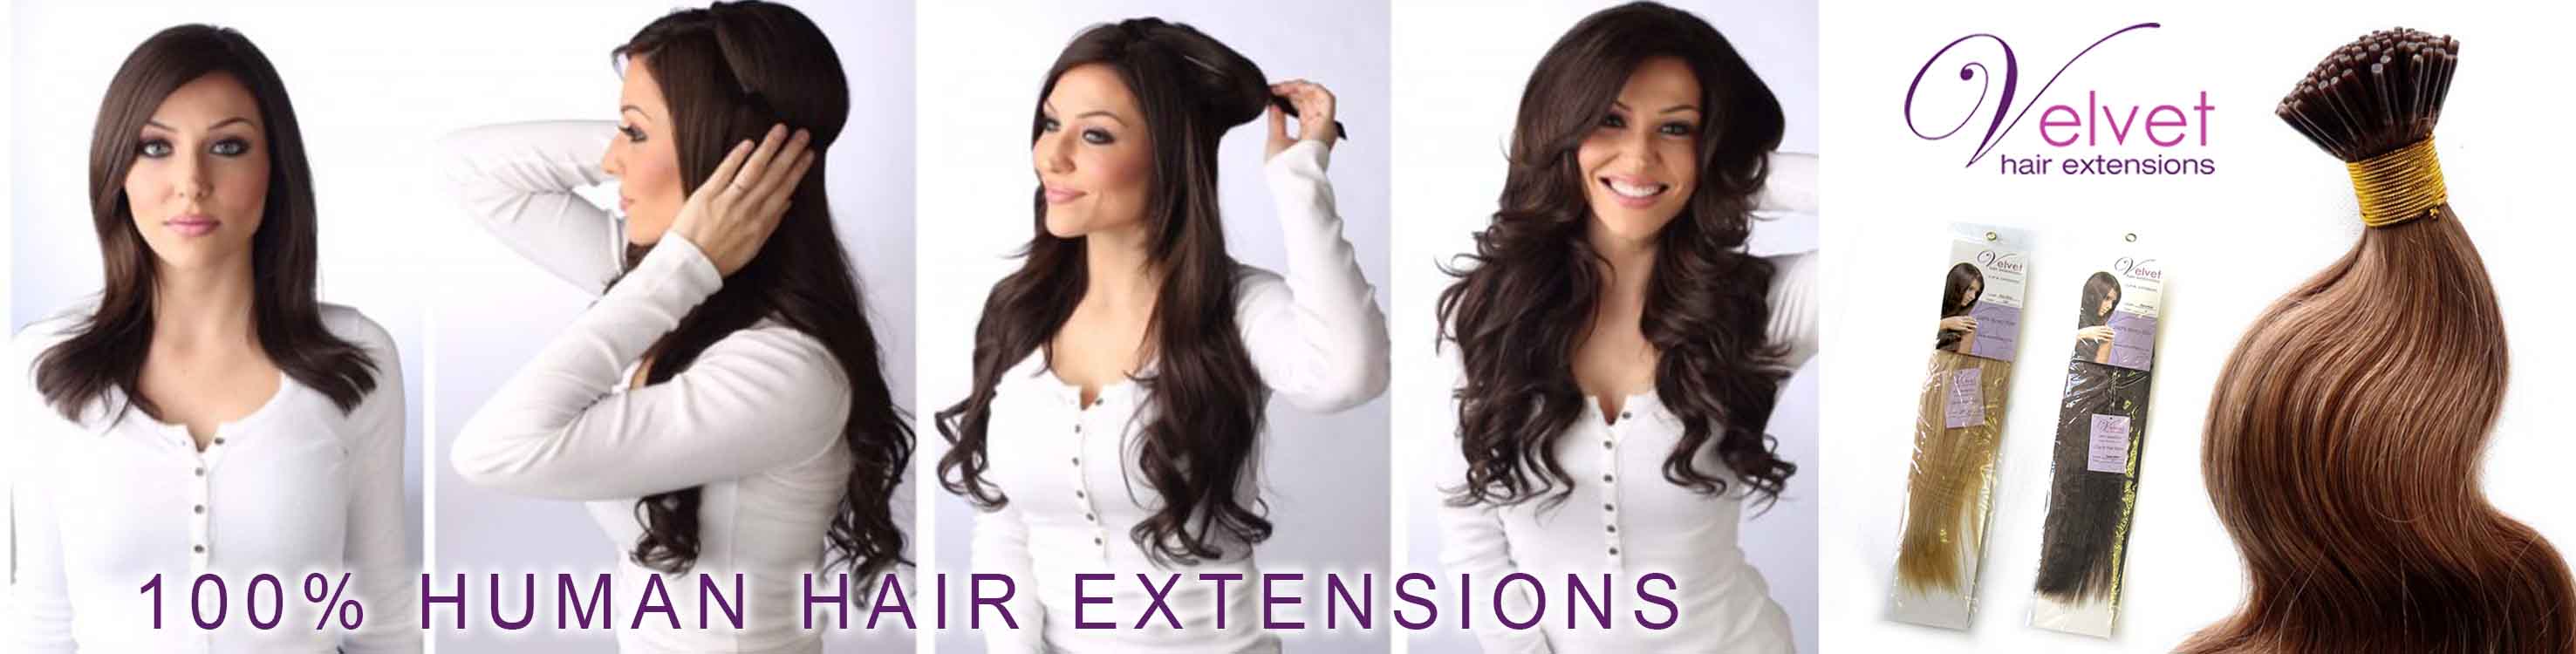 Home - Velvet Hair Extensions